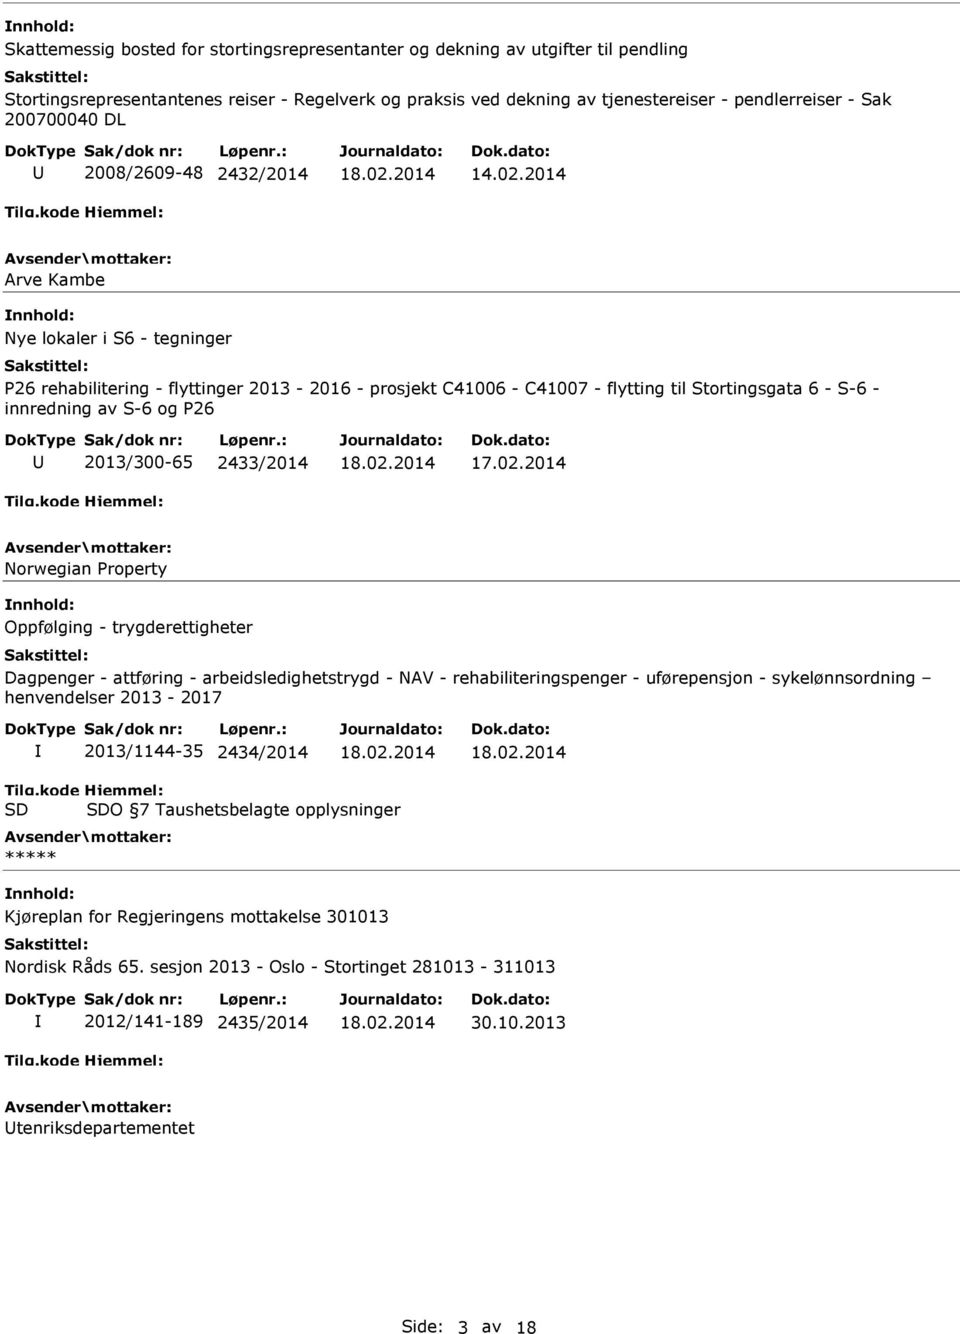 S-6 og P26 2013/300-65 2433/2014 Norwegian Property Oppfølging - trygderettigheter Dagpenger - attføring - arbeidsledighetstrygd - NAV - rehabiliteringspenger - uførepensjon - sykelønnsordning